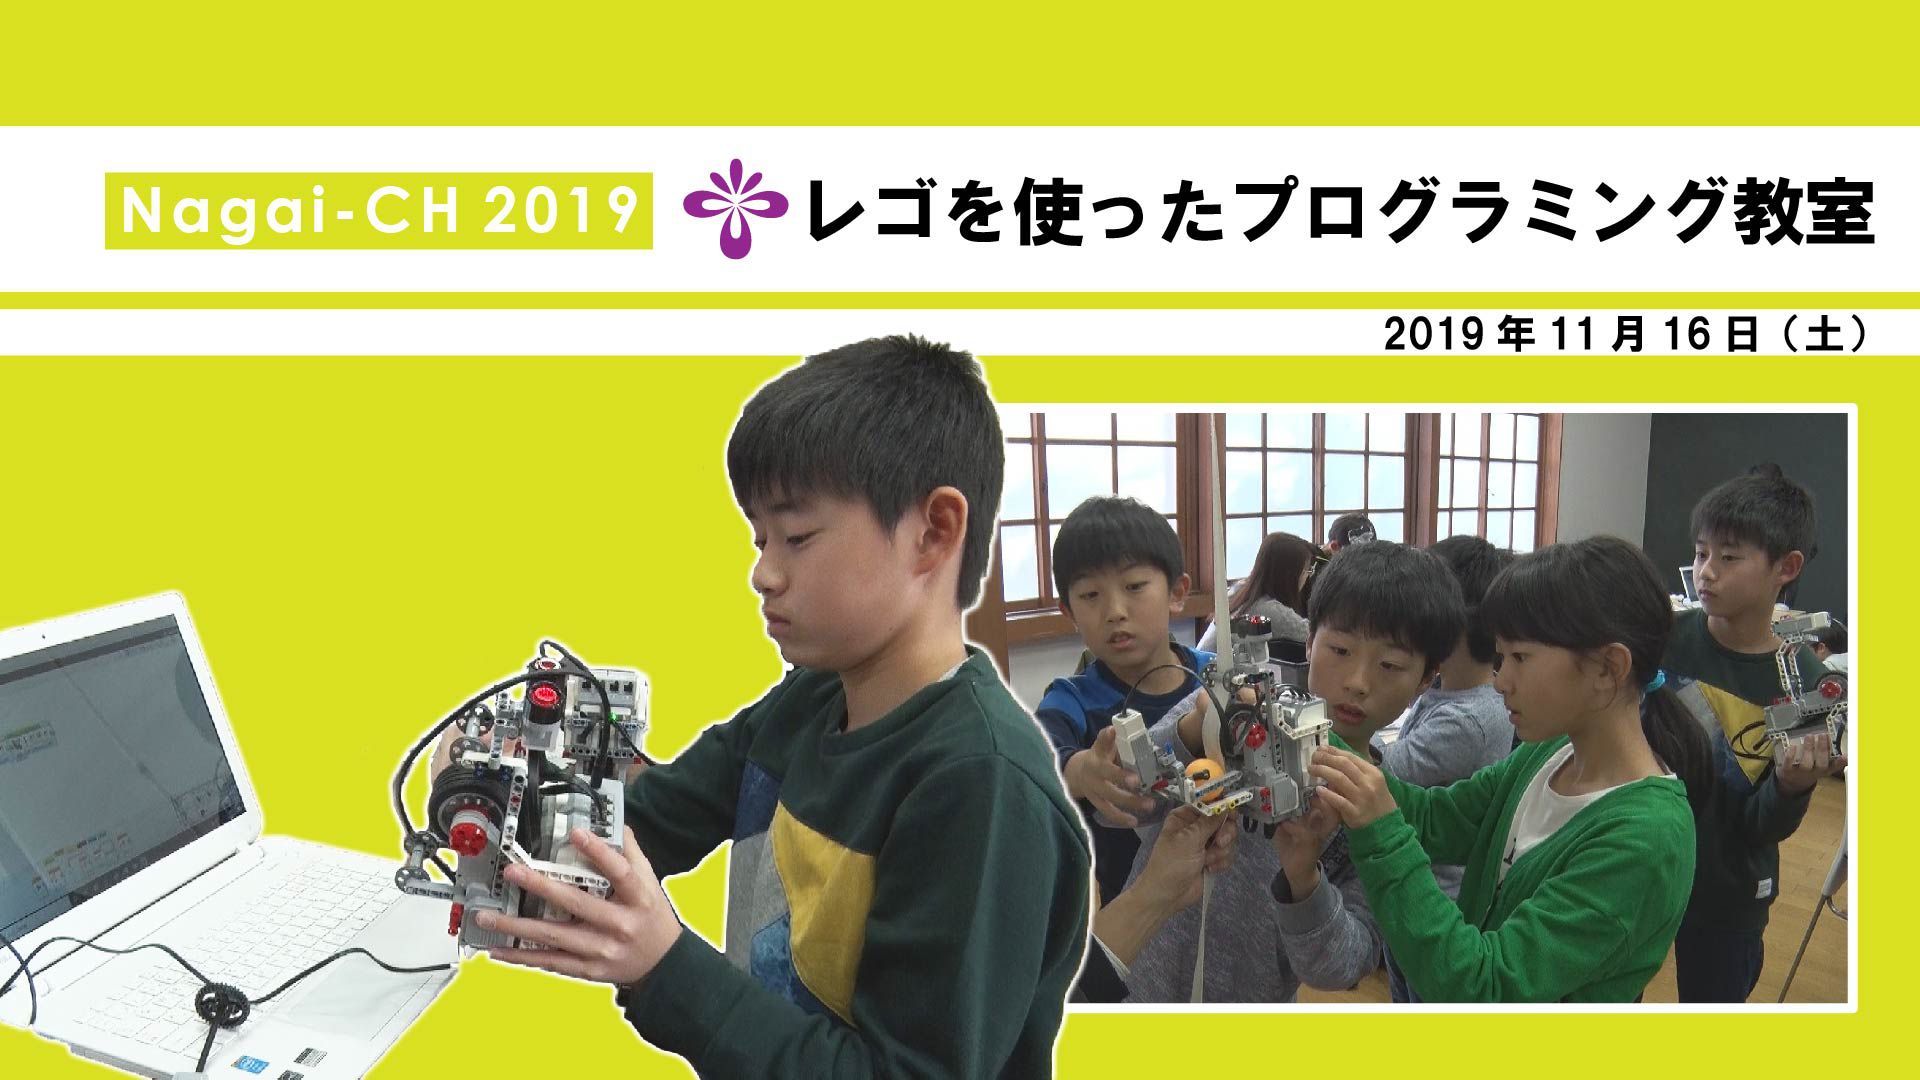 【長井市】LEGOを使ったプログラミング教室「宇宙エレベーターにチャレンジ」(令和元年11月16日) 